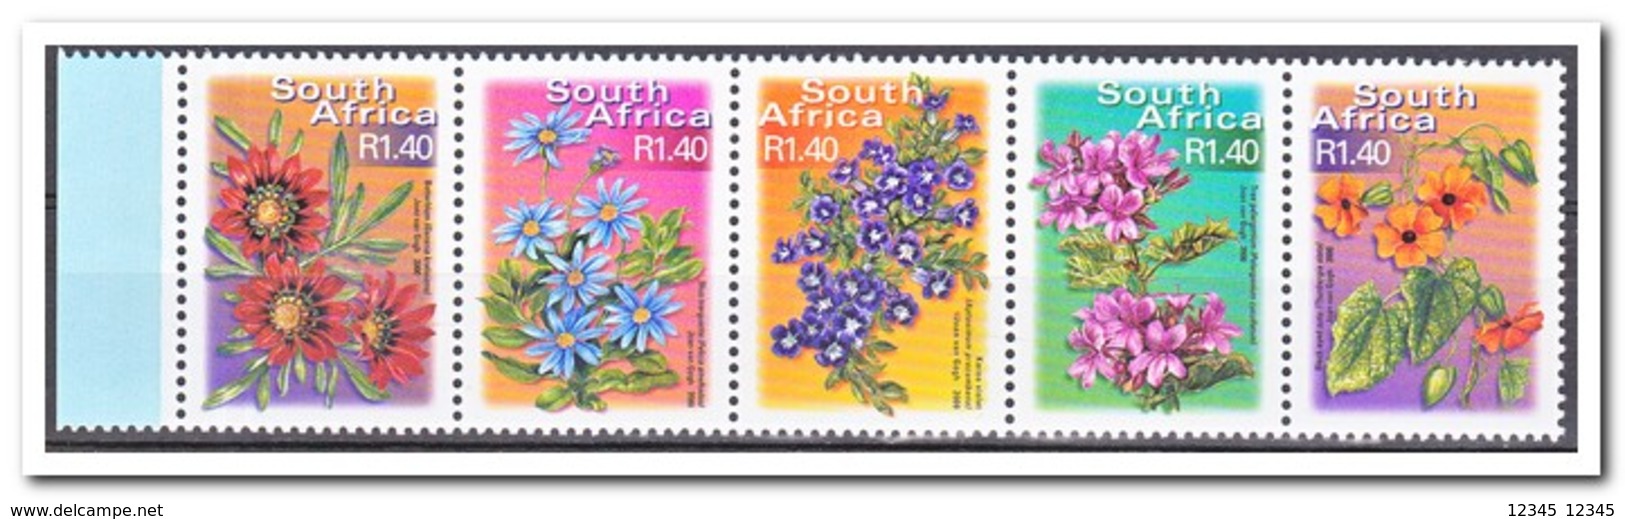 Zuid Afrika 2001, Postfris MNH, Flowers - Ongebruikt